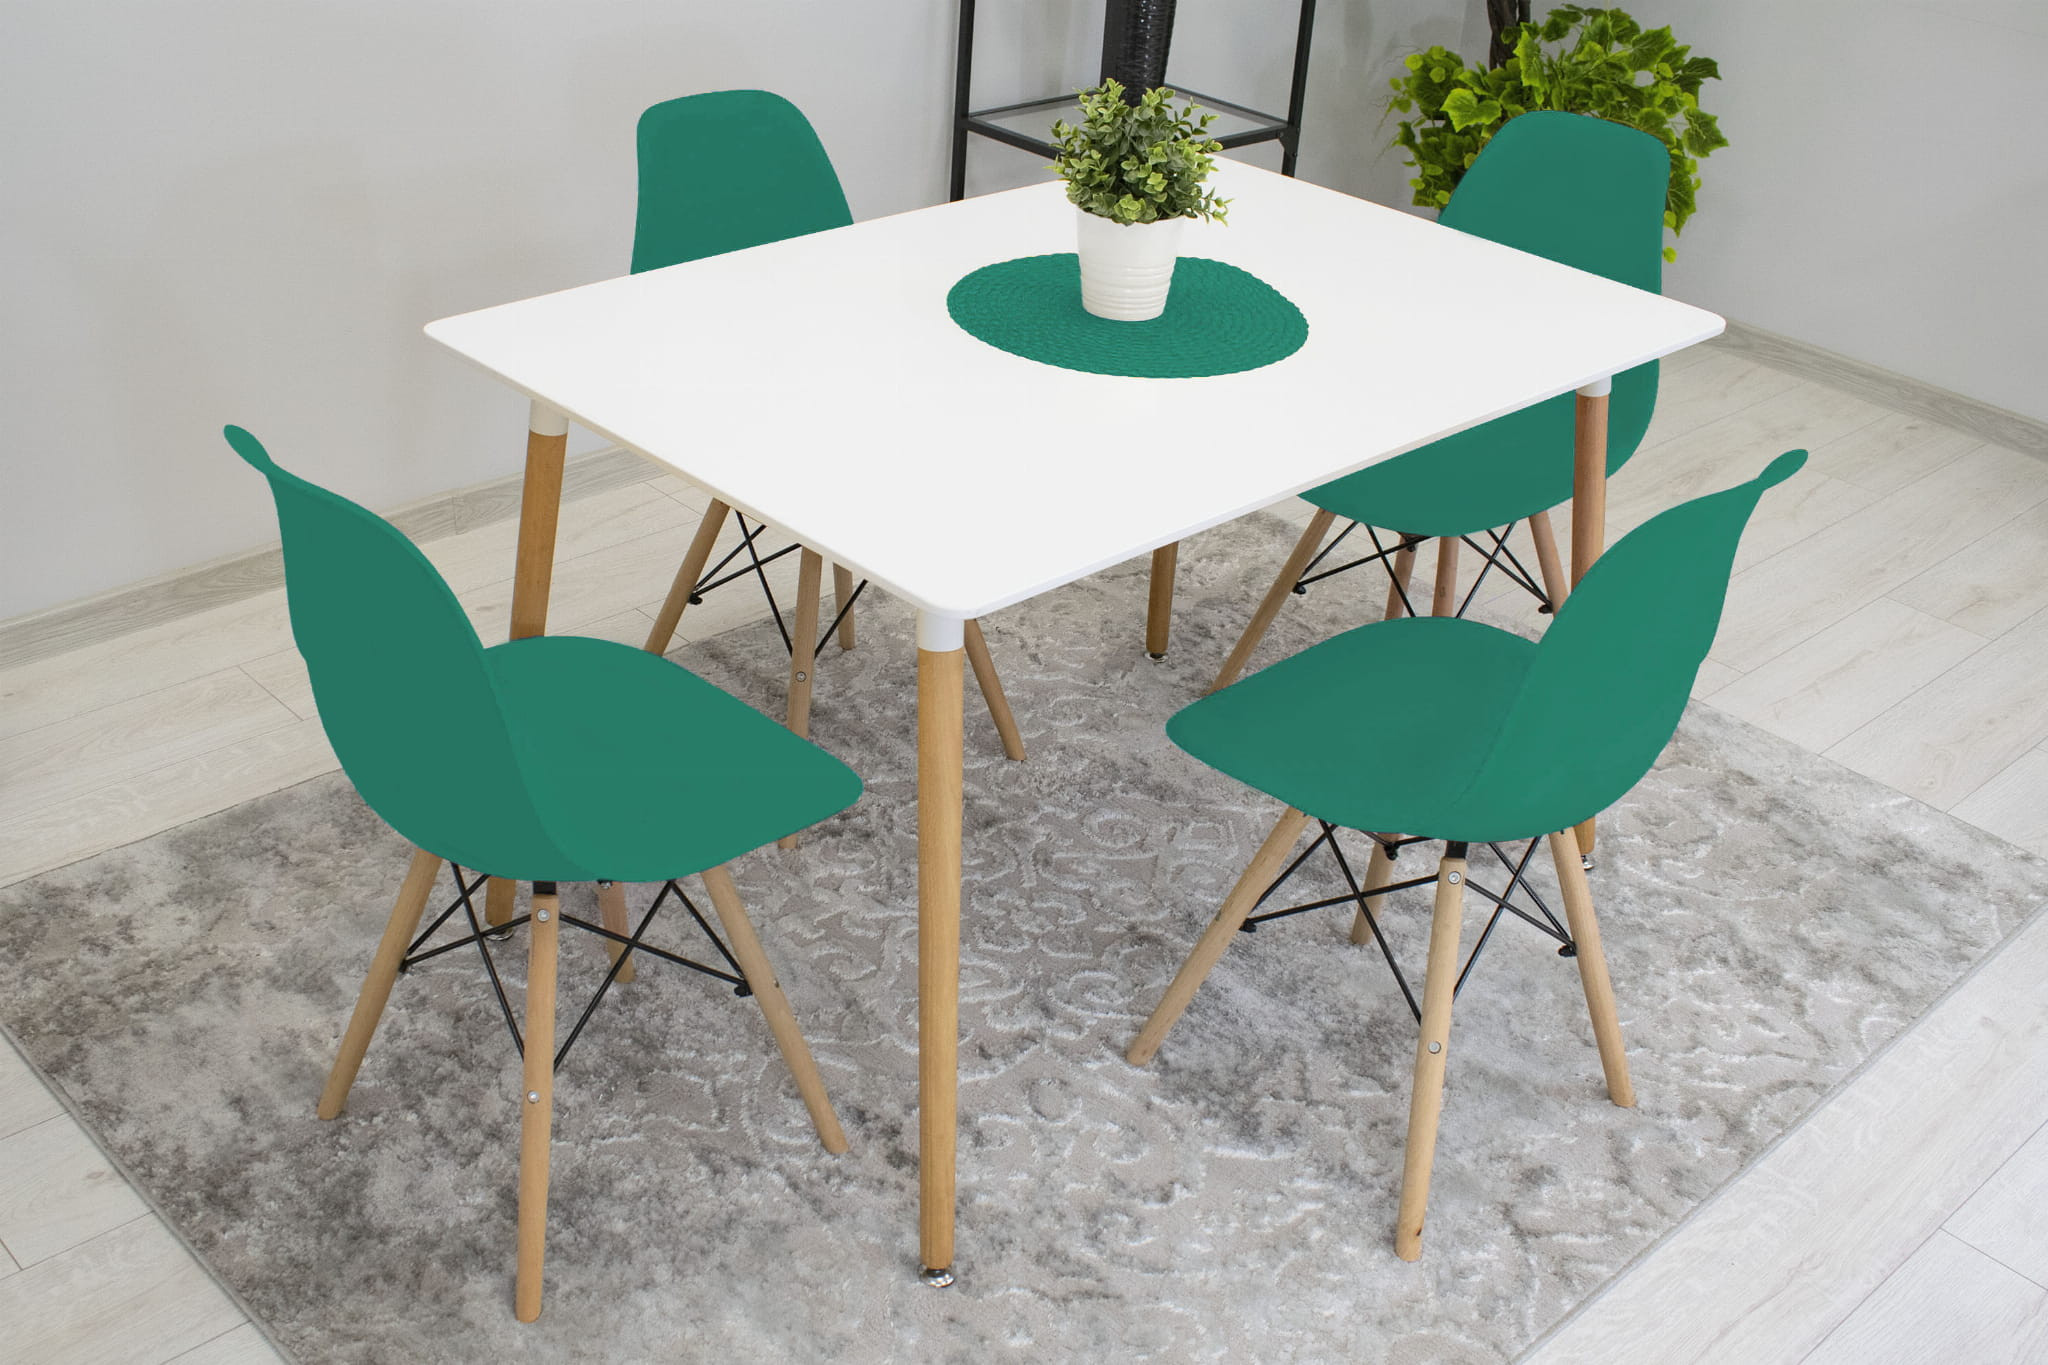 Set jídelních židlí OSAKA zelené (hnědé nohy) 4ks